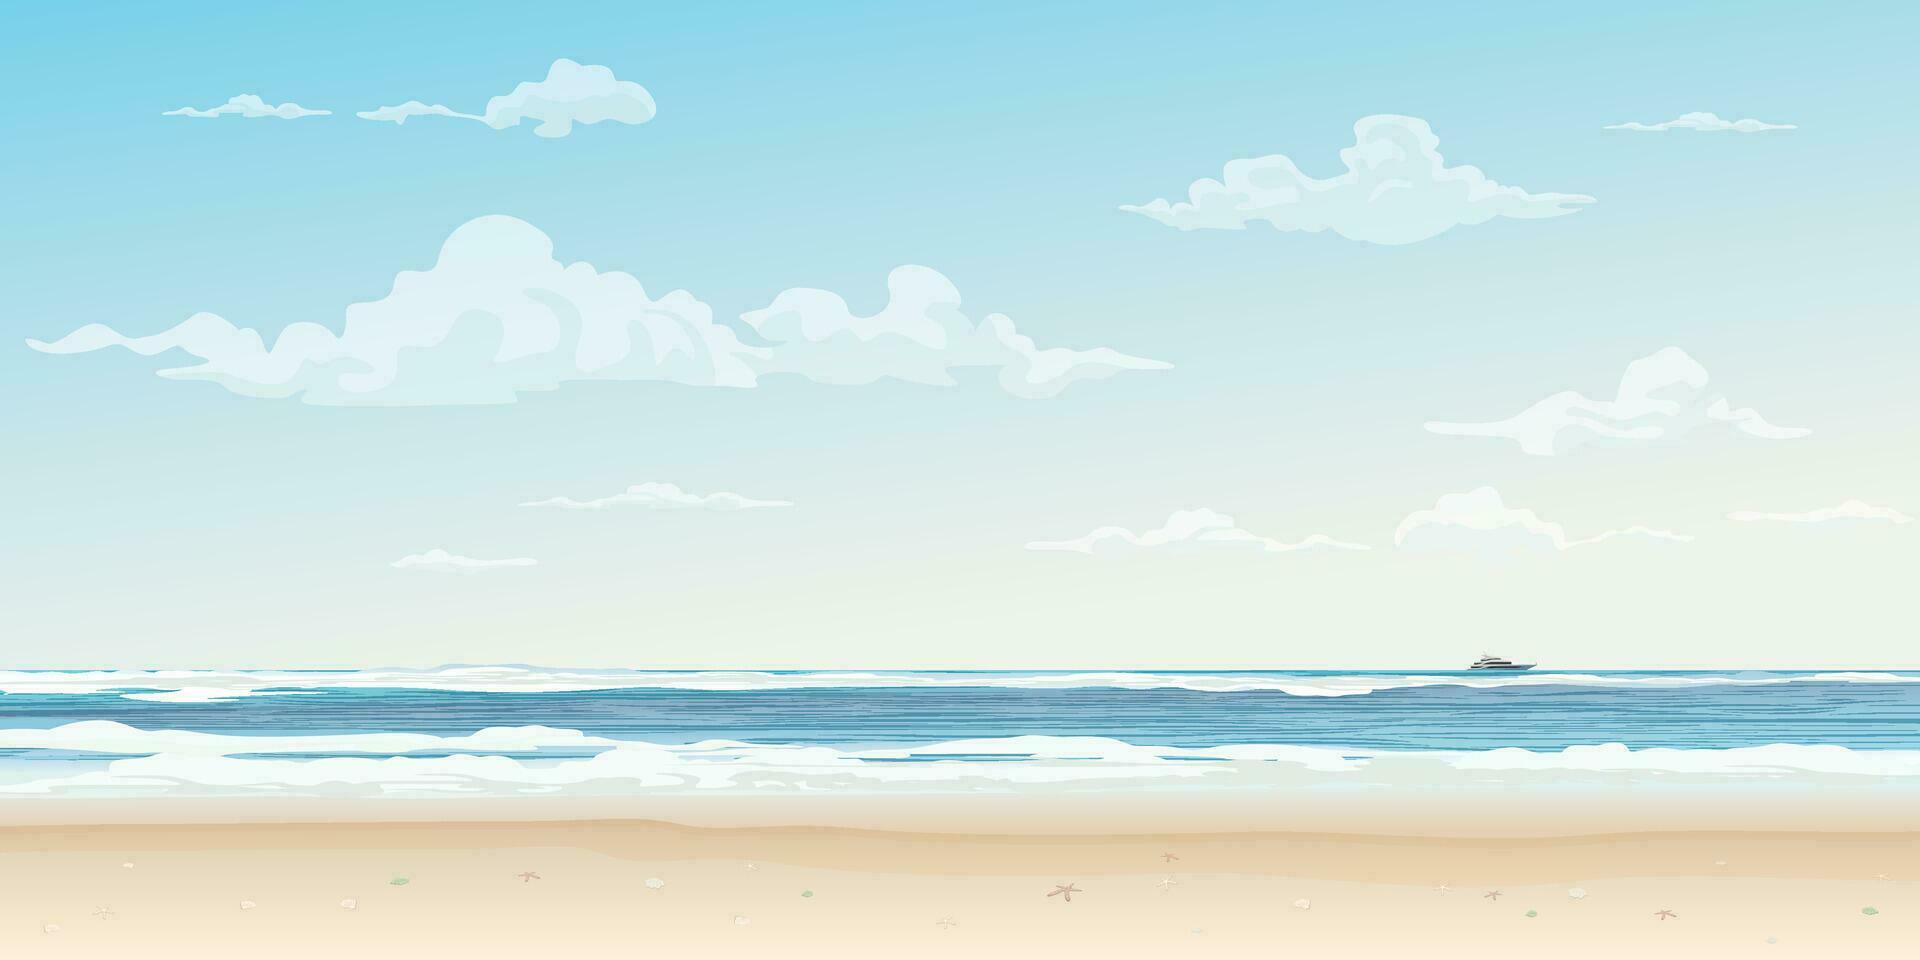 blanc le sable plage et tropical bleu mer vecteur illustration. été concept plat conception avoir Vide espace.